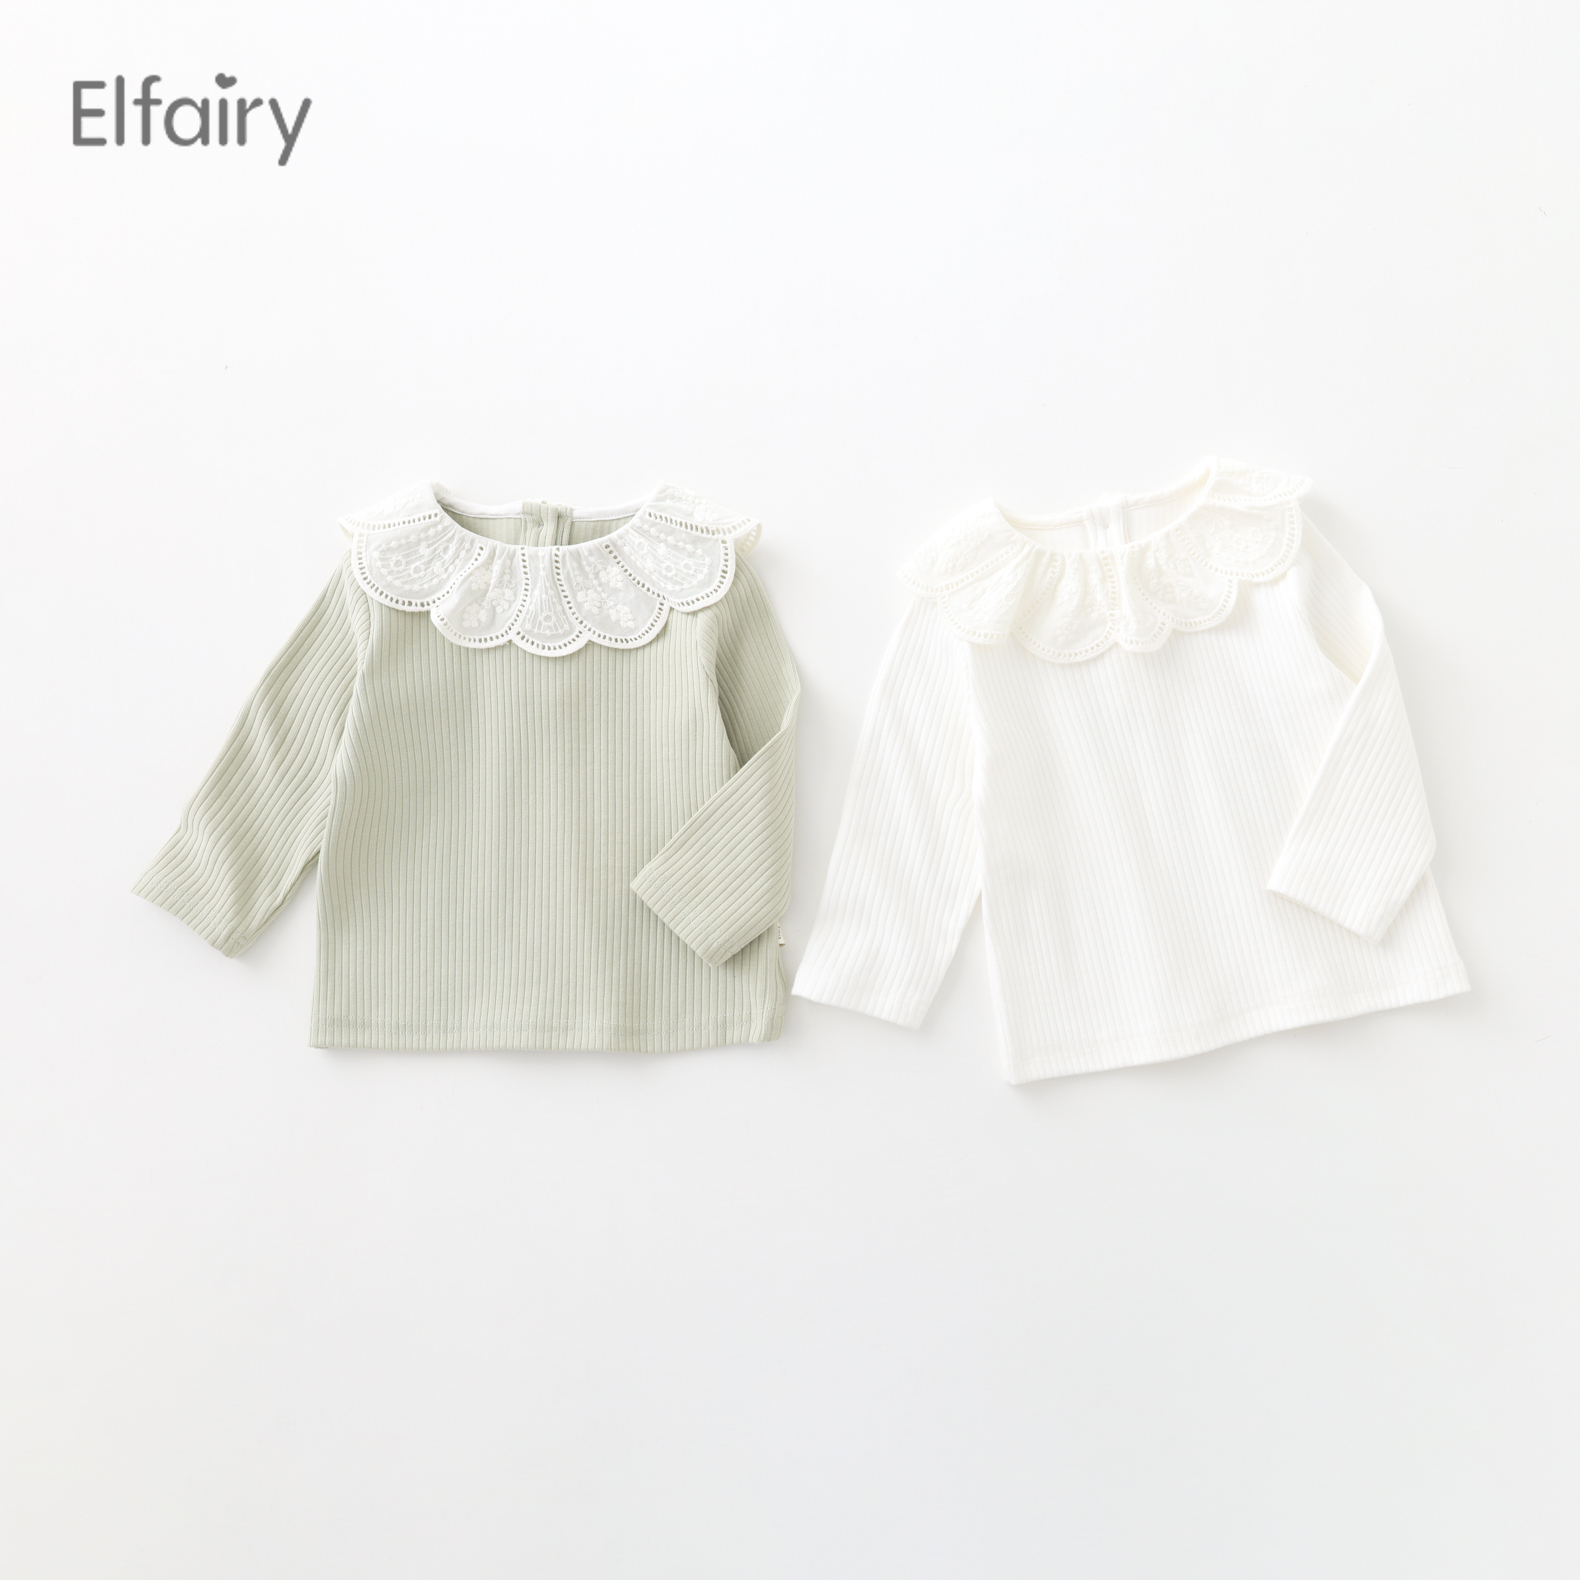 Elfairy女童T恤长袖宝宝打底衫女婴儿衣服儿童花边领上衣纯棉春装